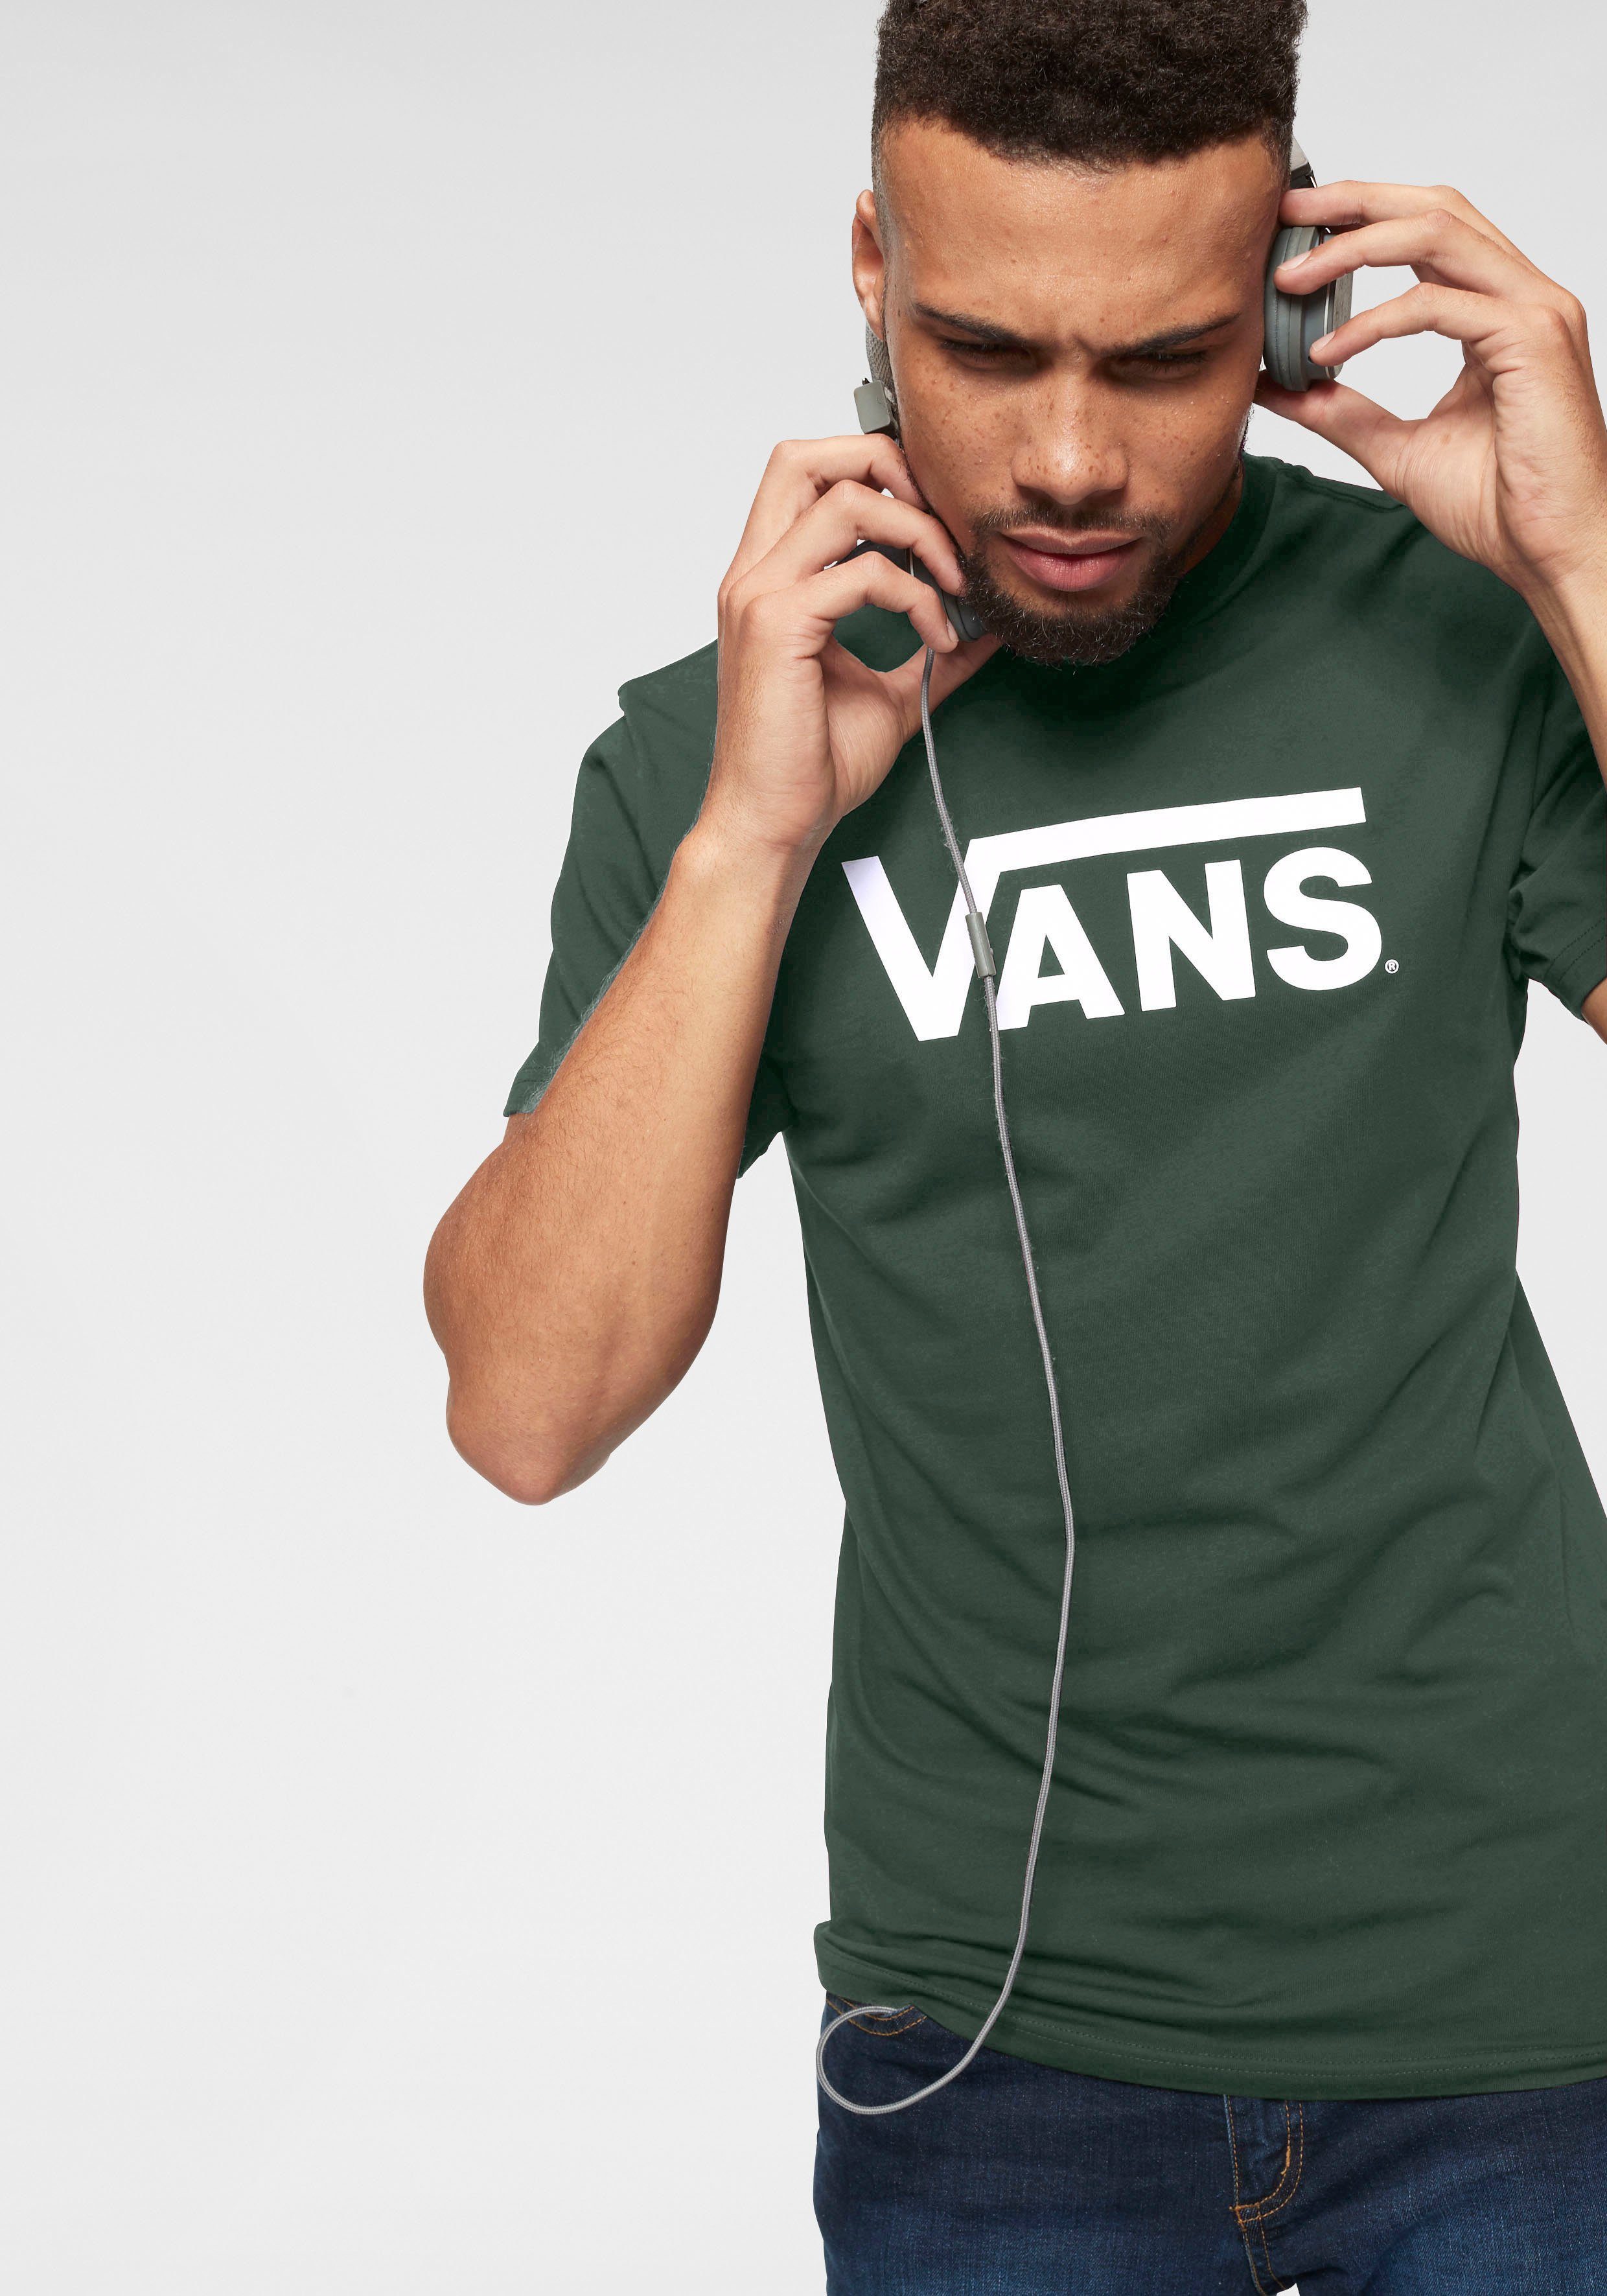 Vans T-Shirt Herren online kaufen | OTTO